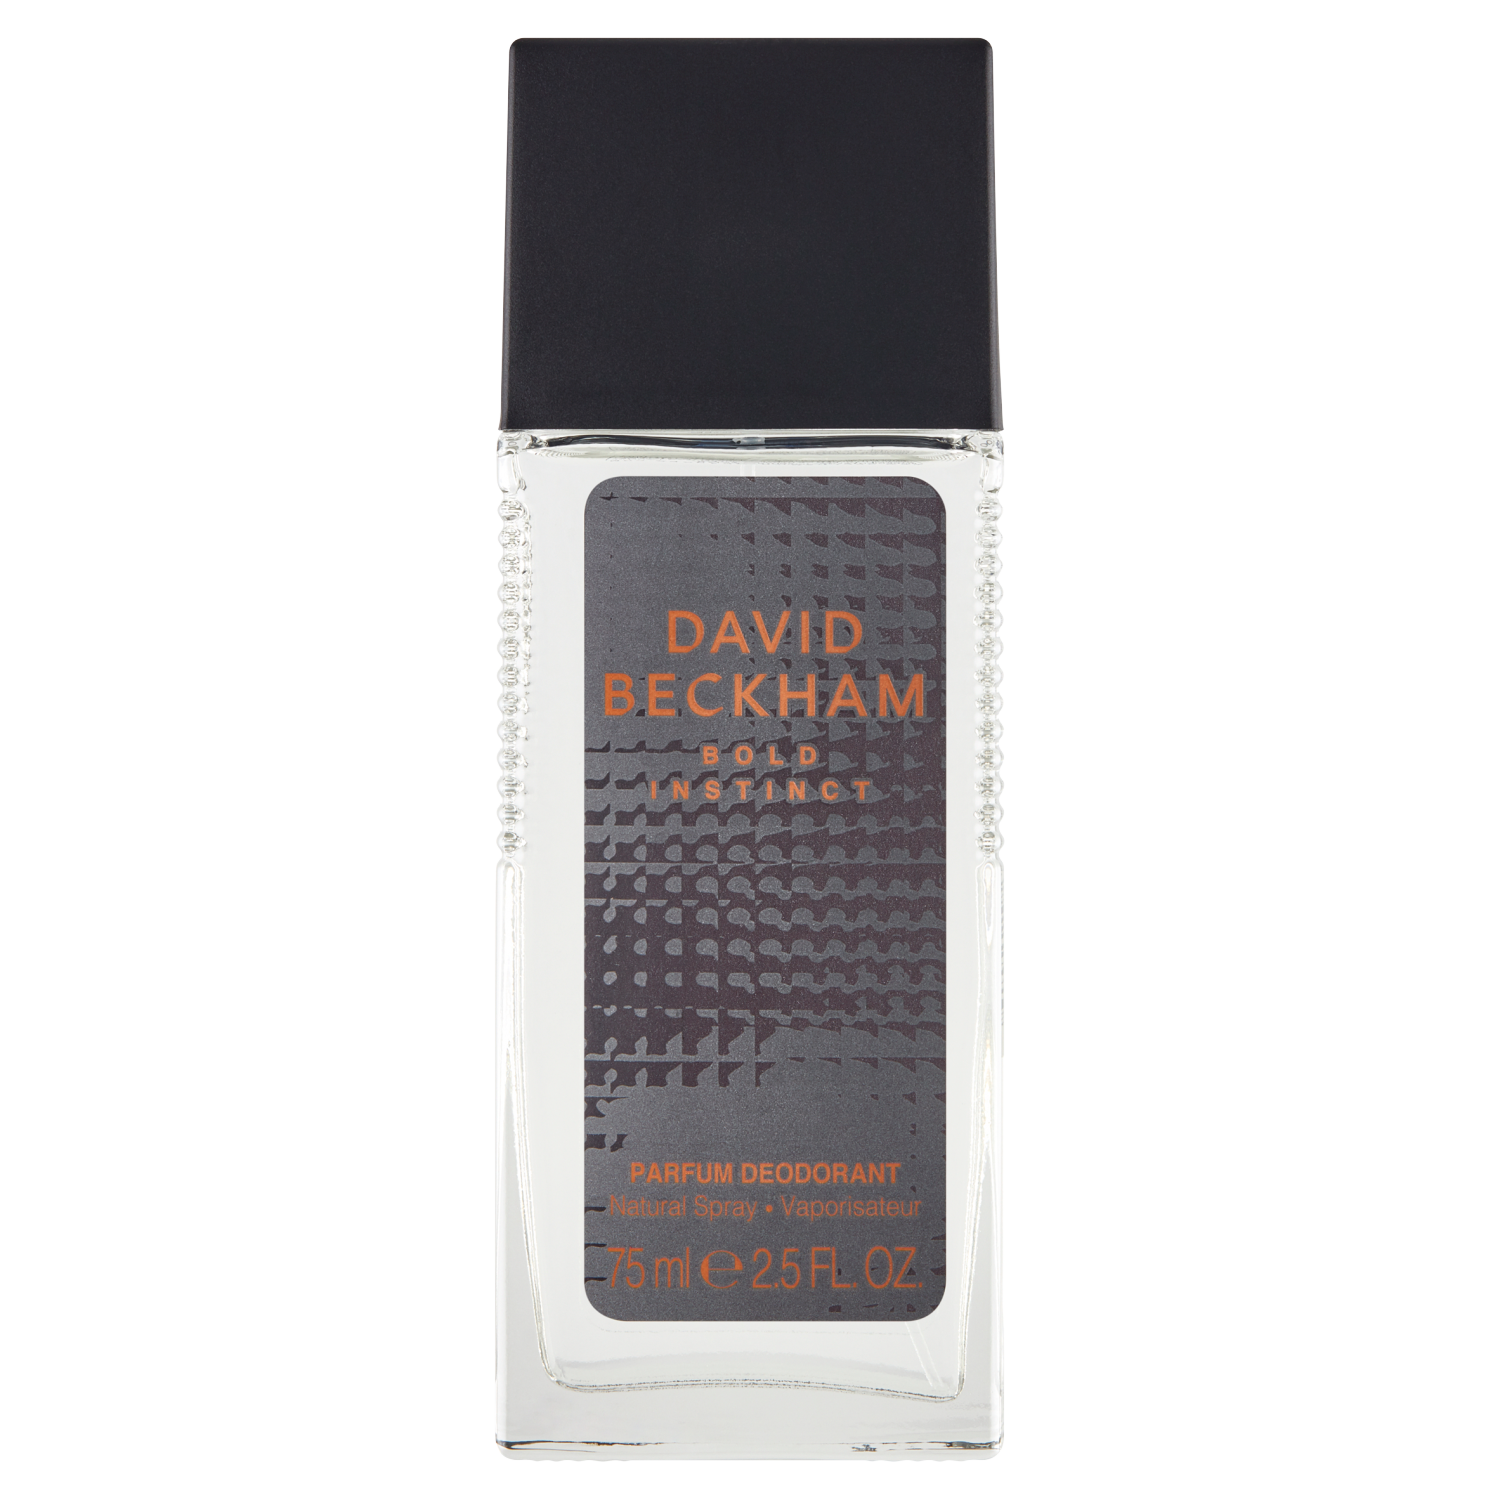 David Beckham Bold Instinct парфюмированный дезодорант для тела для мужчин, 75 мл